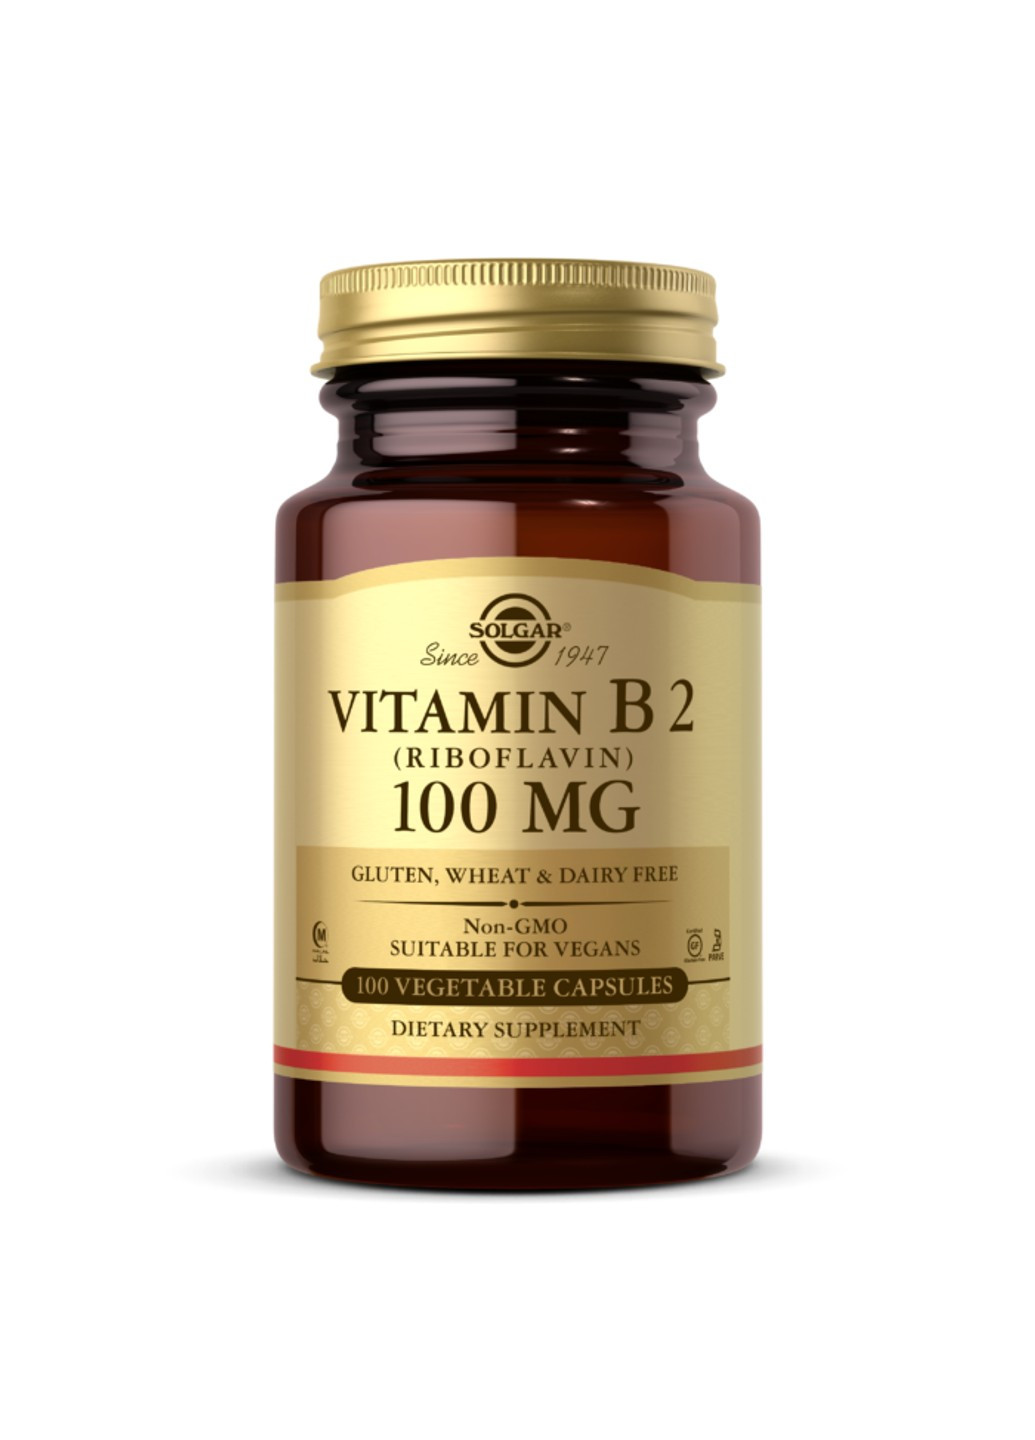 Вітамін В2 Солгар Vitamin B2 100 mg (100 капс) рибофлавін солгар Solgar (255409156)